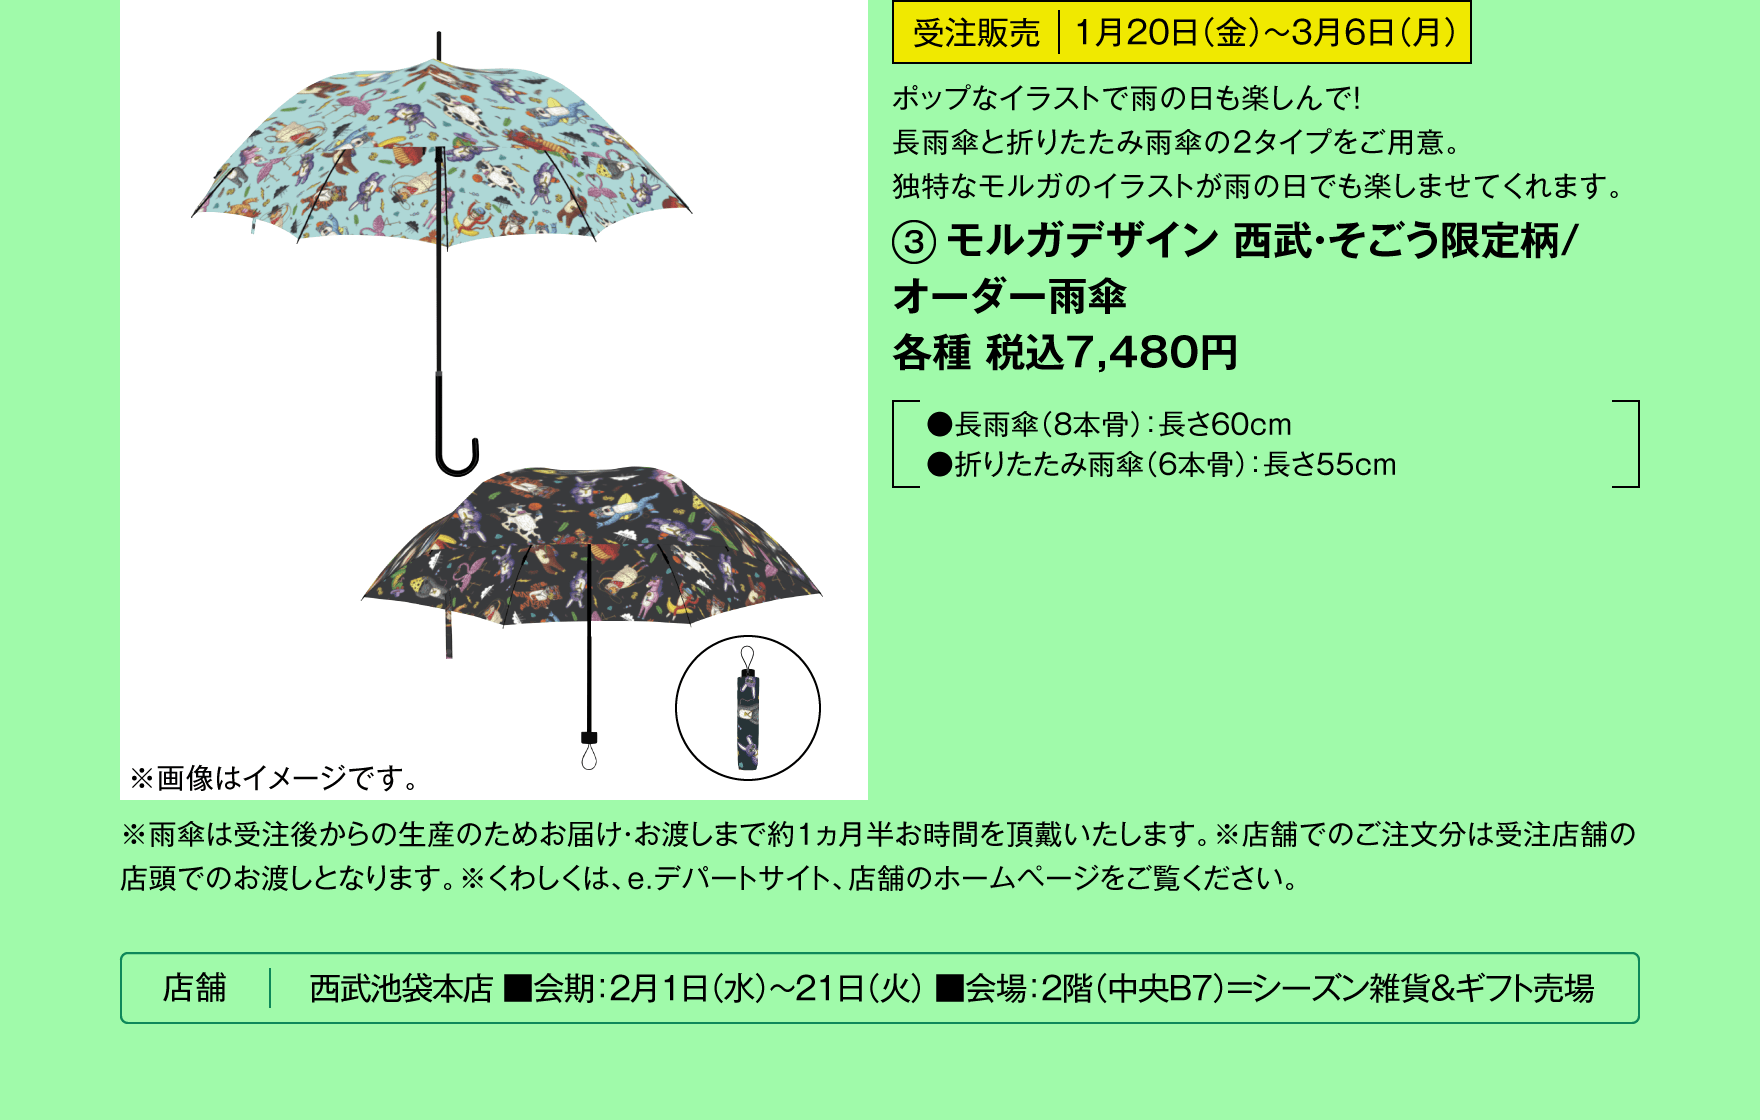 モルガデザイン 西武・そごう限定柄/オーダー雨傘